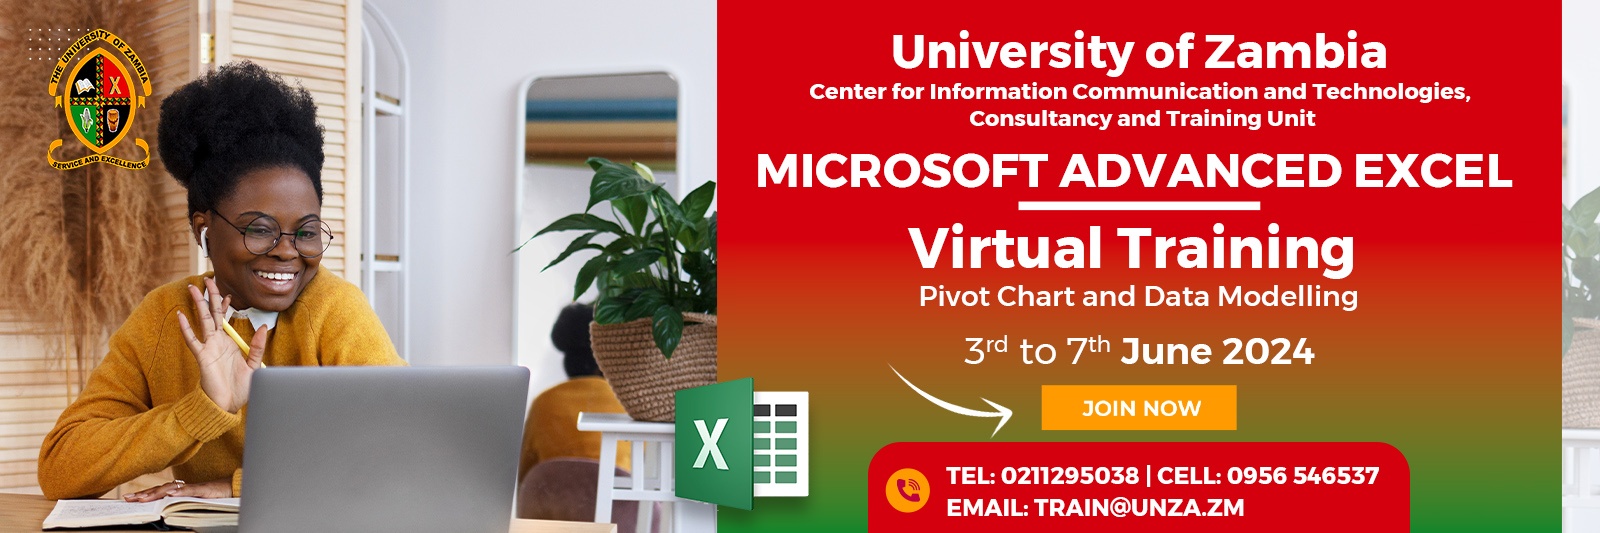 MS Advanced Excel Virtual Training